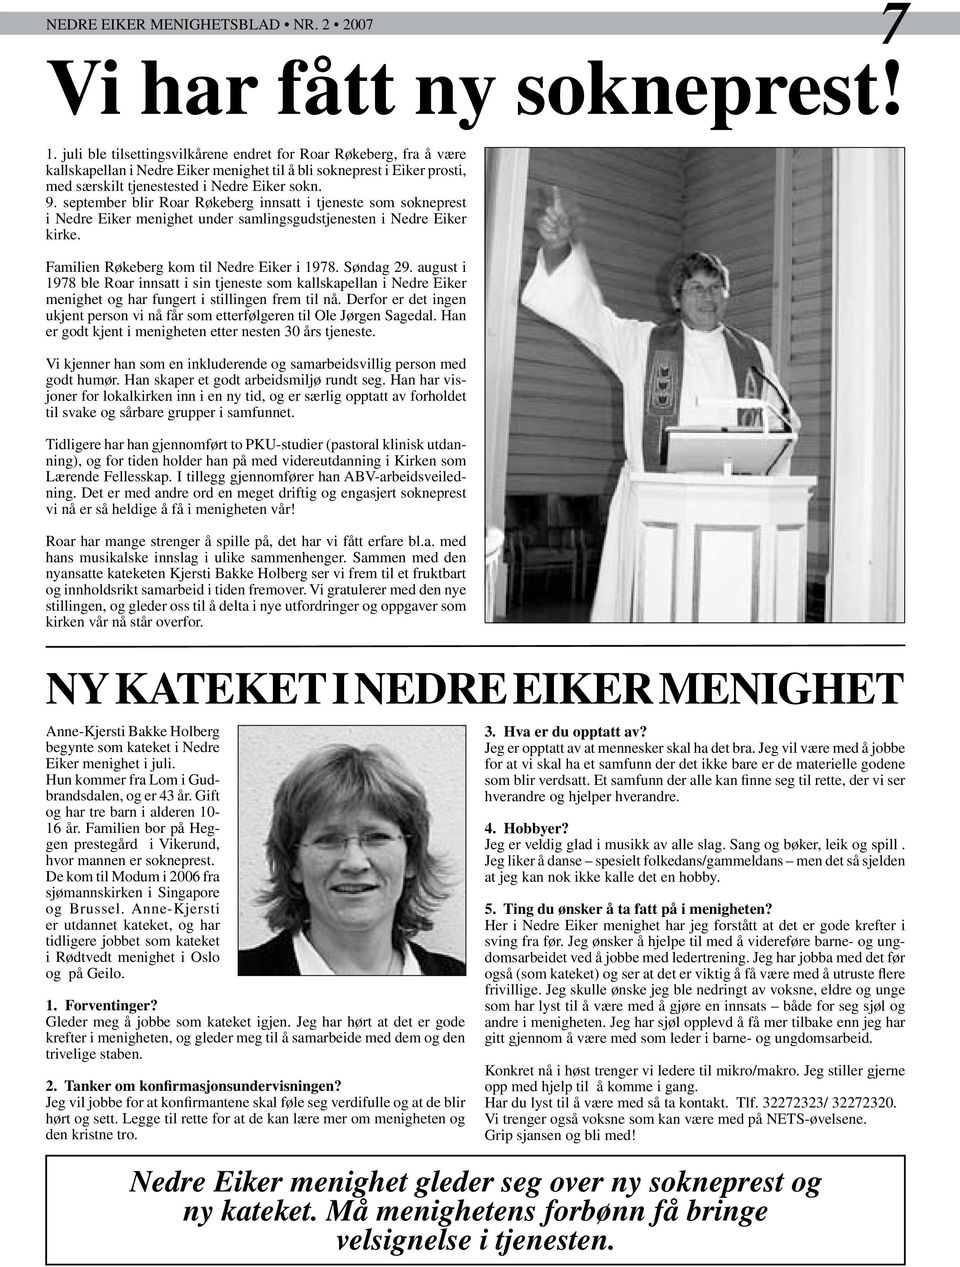 september blir Roar Røkeberg innsatt i tjeneste som sokneprest i Nedre Eiker menighet under samlingsgudstjenesten i Nedre Eiker kirke. Familien Røkeberg kom til Nedre Eiker i 1978. Søndag 29.